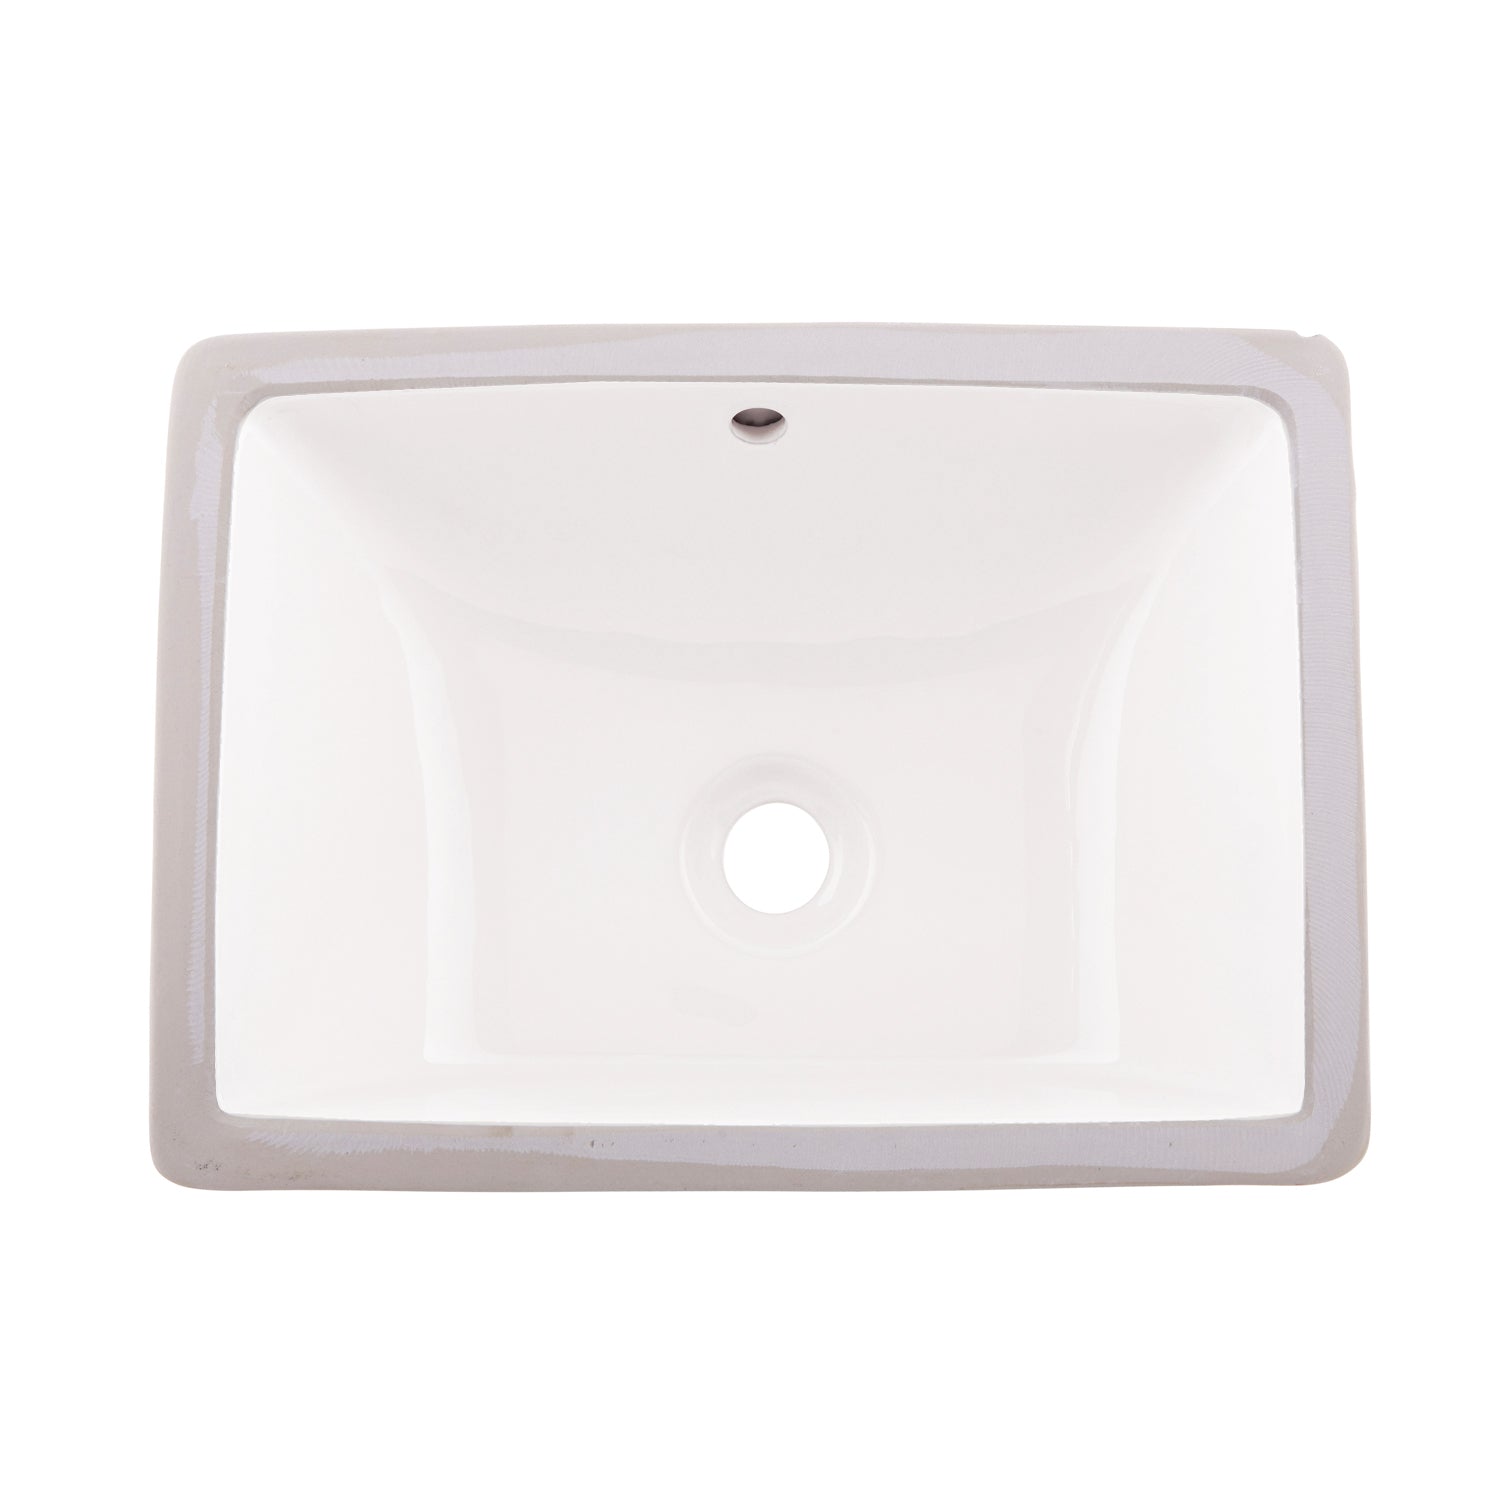 DAX Lavabo de baño bajo encimera cuadrado de cerámica de un solo tazón, acabado blanco, 18-1/2 x 13-1/2 x 8-1/16 pulgadas (BSN-202C-W)